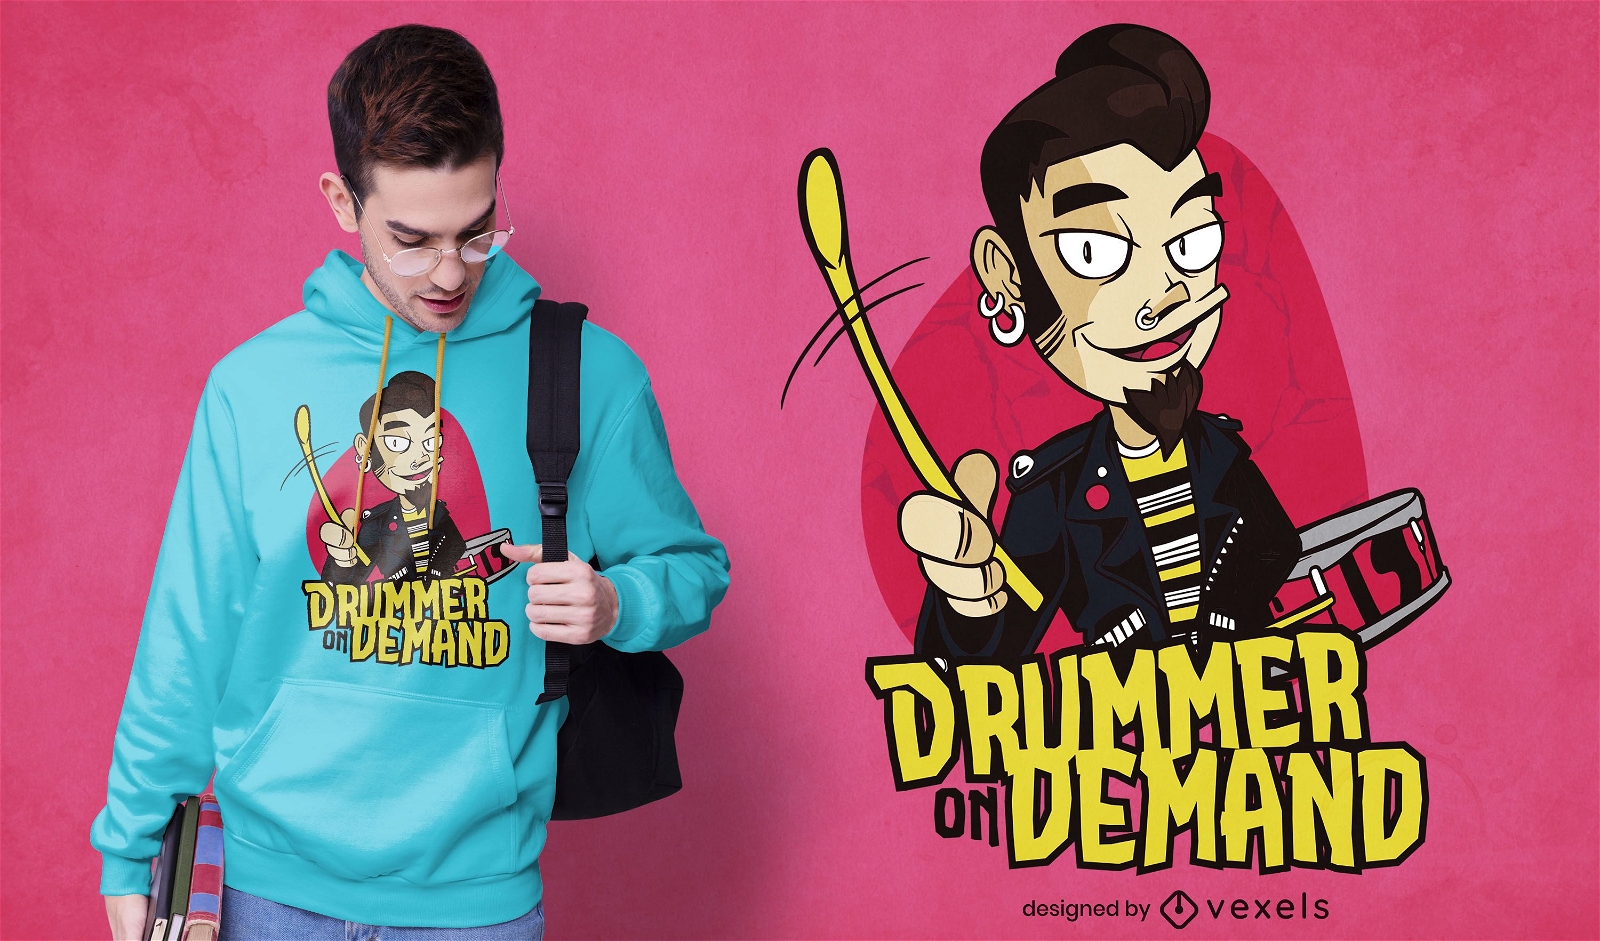 Diseño de camiseta Drummer on demand